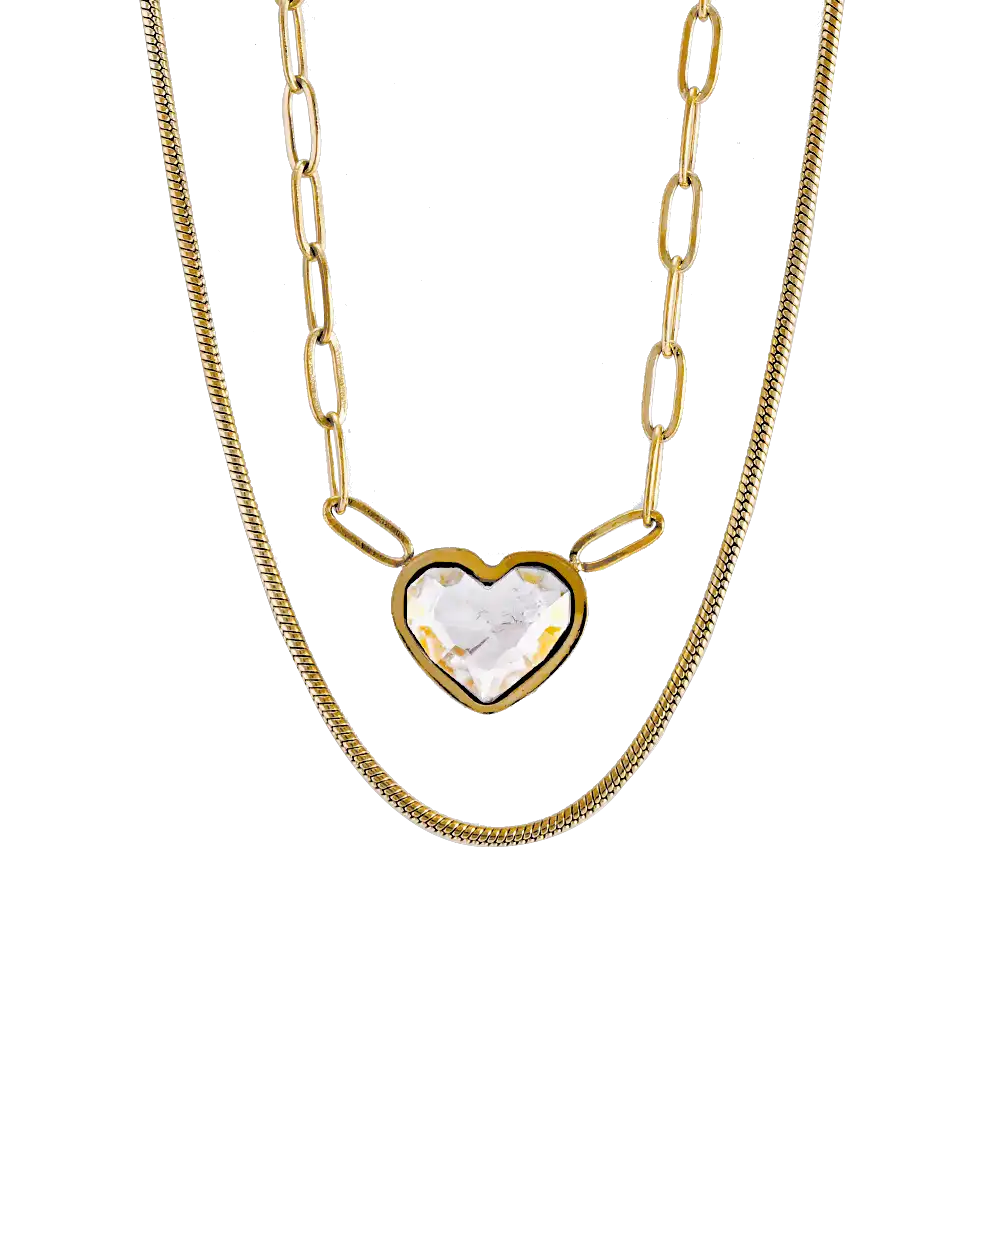 گردنبند دو زنجیره زنانه استیل طرح قلب مدل 1482 همراه با جعبه و ارسال رایگان قیمت 299 هزارتومان | خرید آنلاین گردبند استیل رنگ ثابت طرح قلب